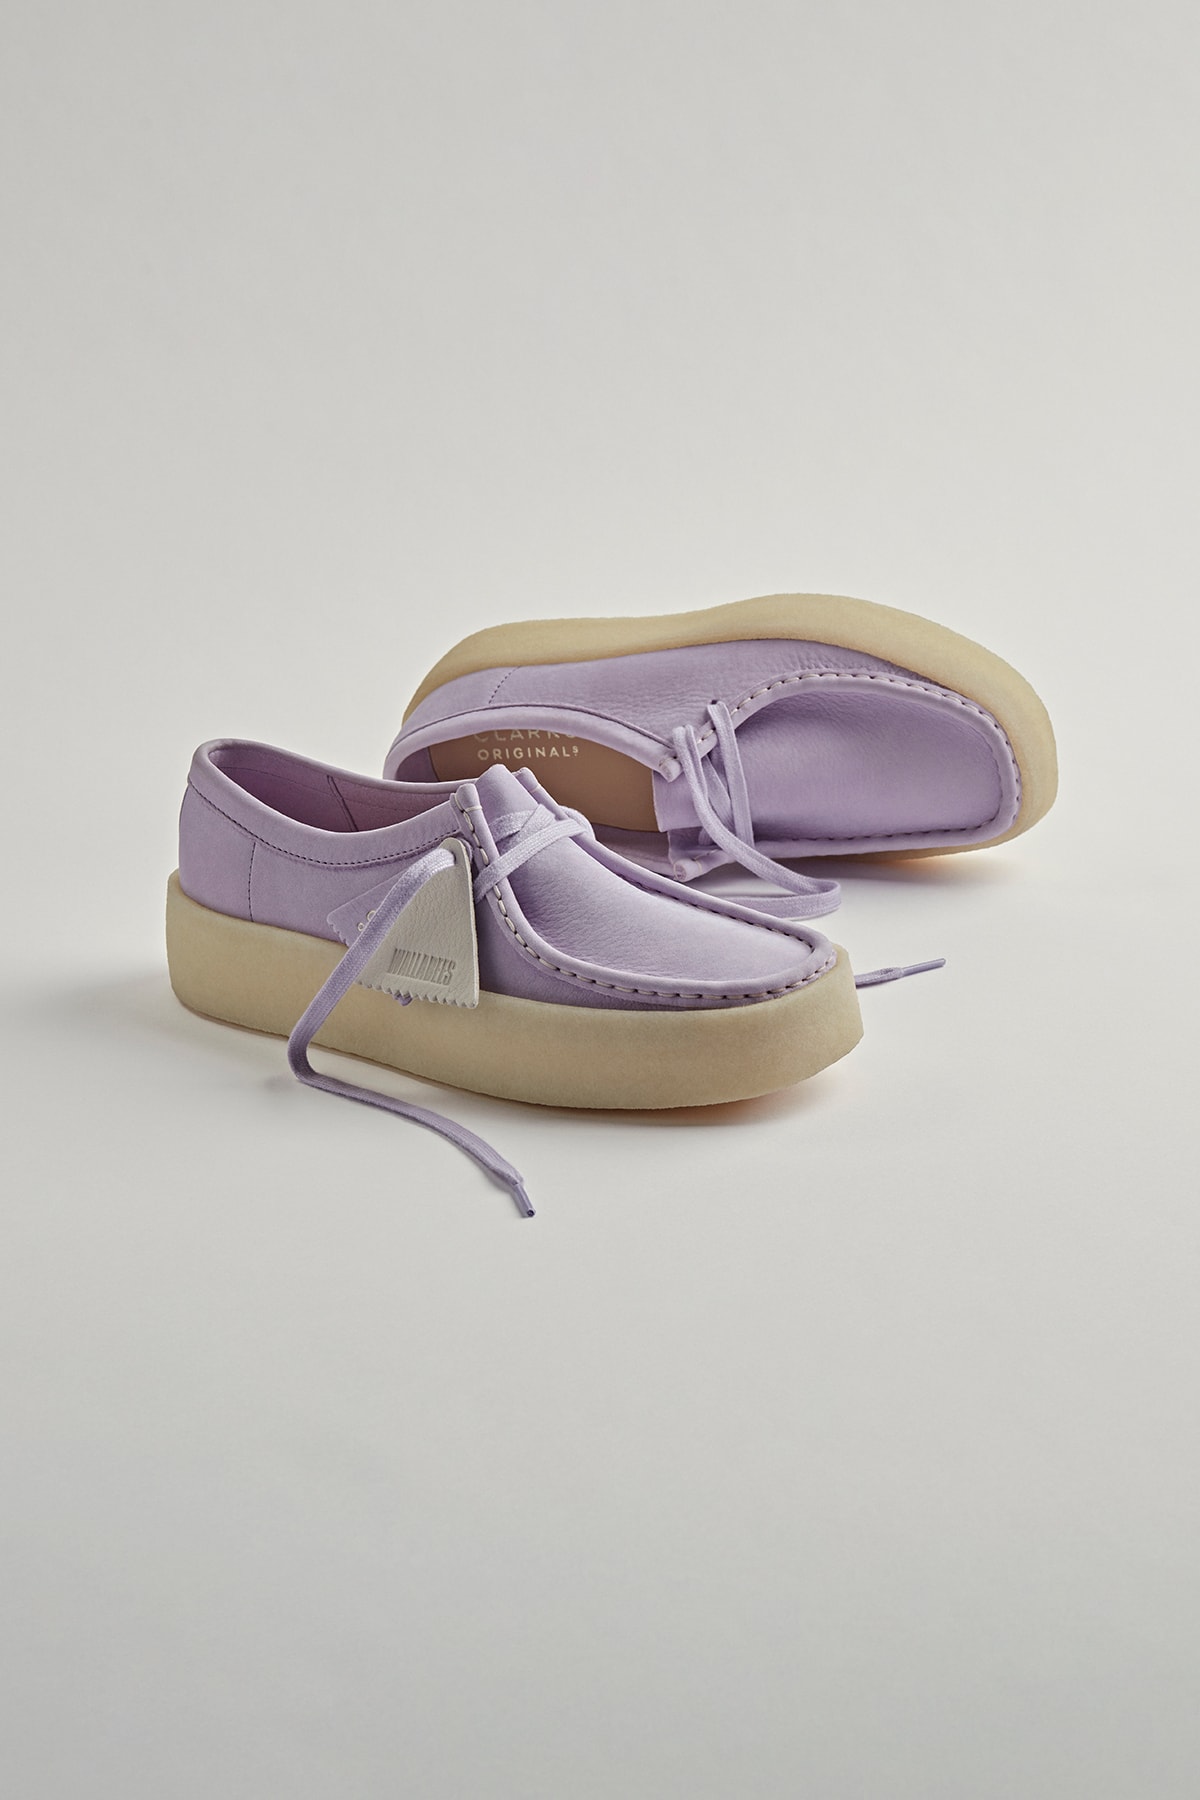 Clarks Originals Wallabee Cup Shoe Lilac Purple